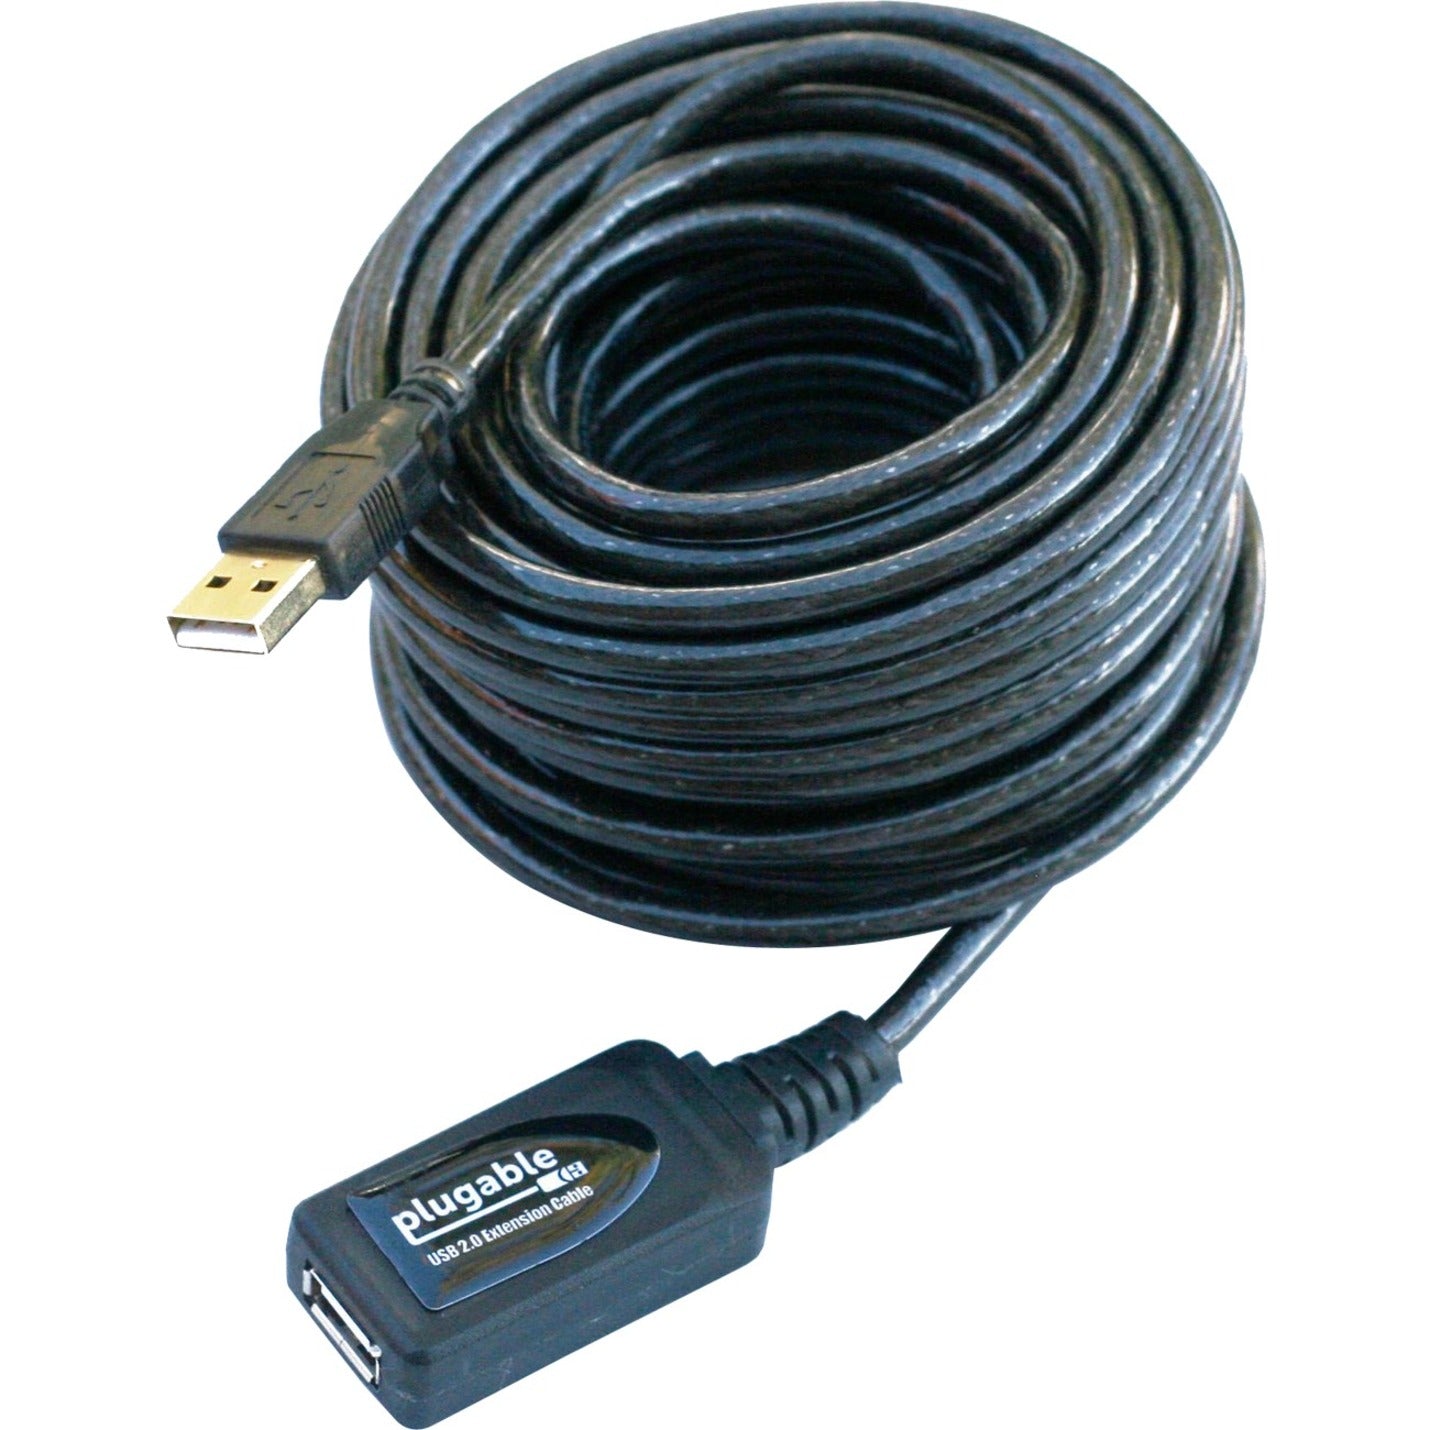 Câble d'extension actif USB2-10M USB 2.0 Plugable (10m/32ft) Répéteur Taux de transfert de données de 480 Mbit/s